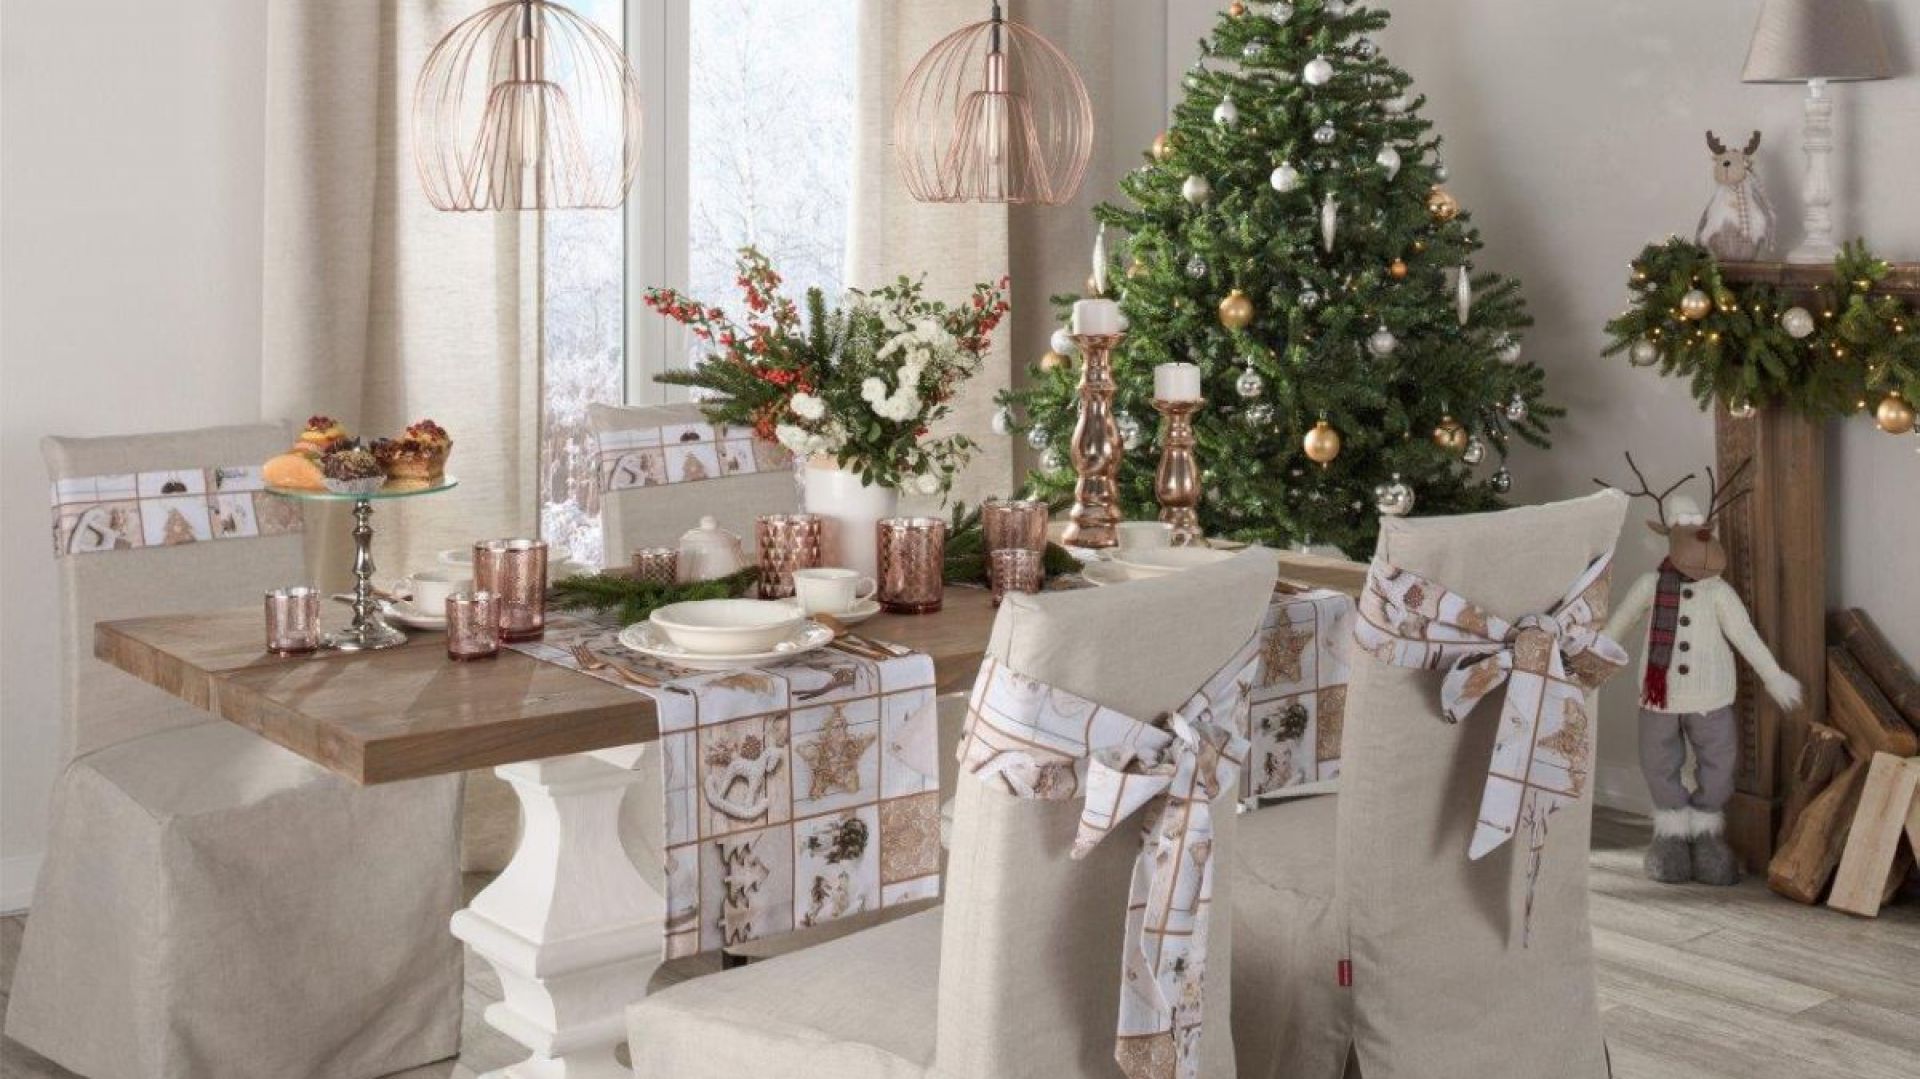 Co zrobić, żeby stół w jadalni wyglądał świątecznie?